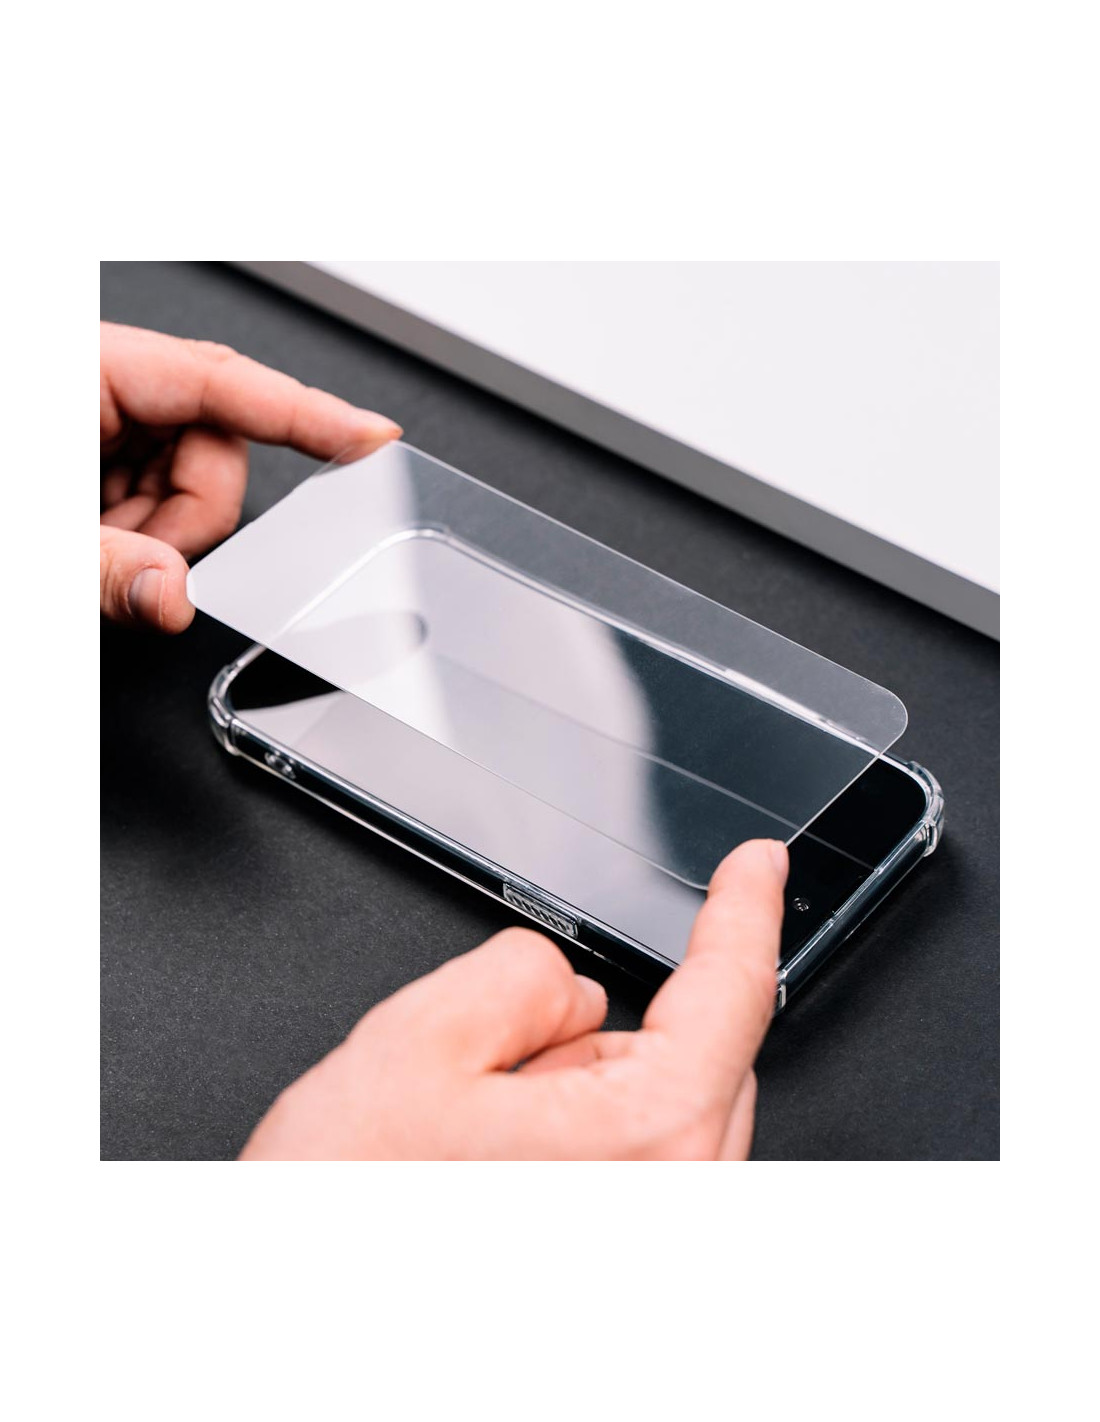 Protector de cristal templado iPhone XR